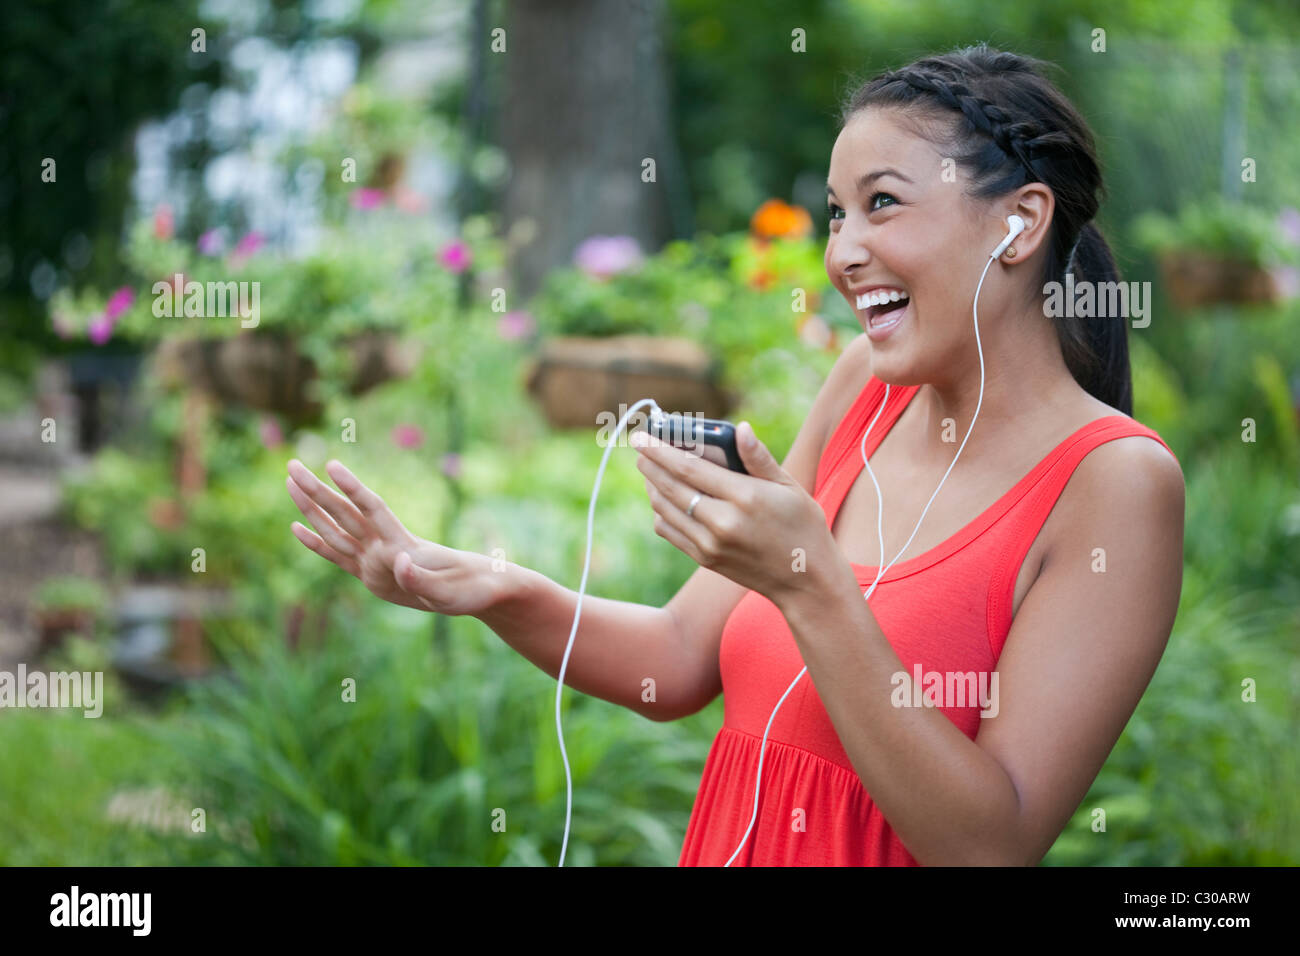 Attraktive junge asiatische Frau tanzt spielerisch Musik auf ihrem tragbaren Musik-Player. Horizontalen Schuss. Stockfoto